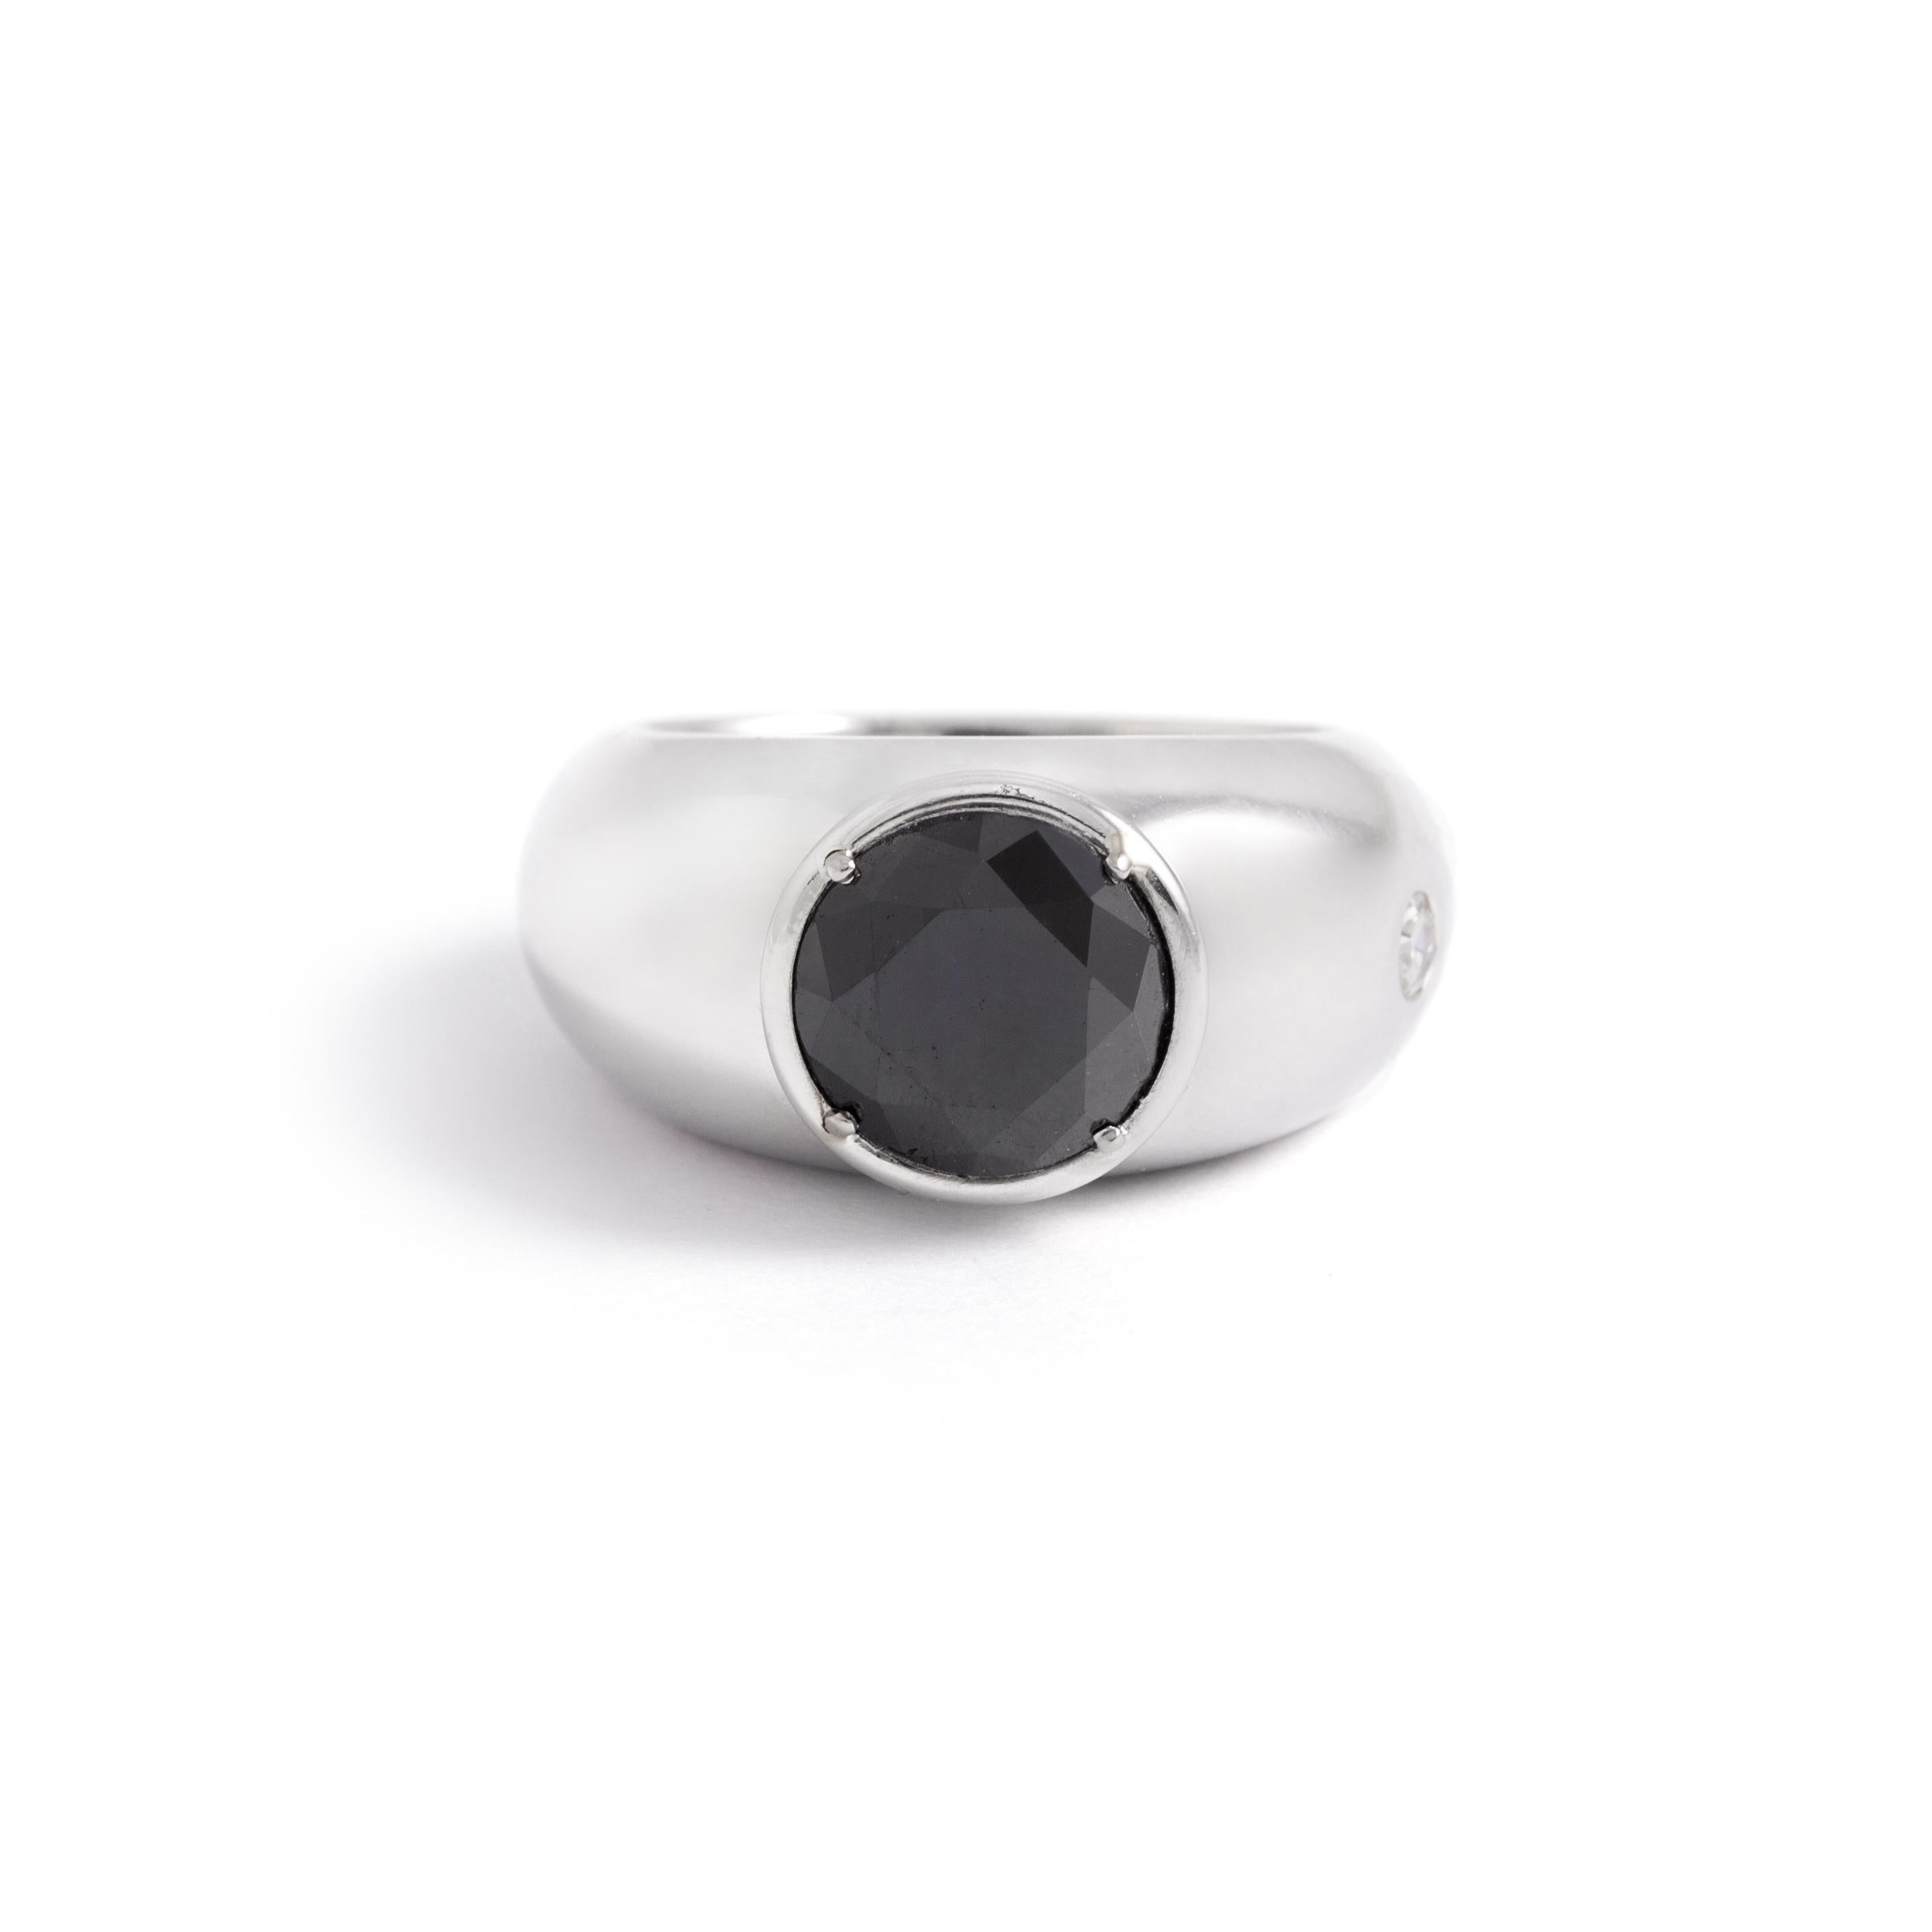 5.71 carat Black Diamond Platinum Ring.